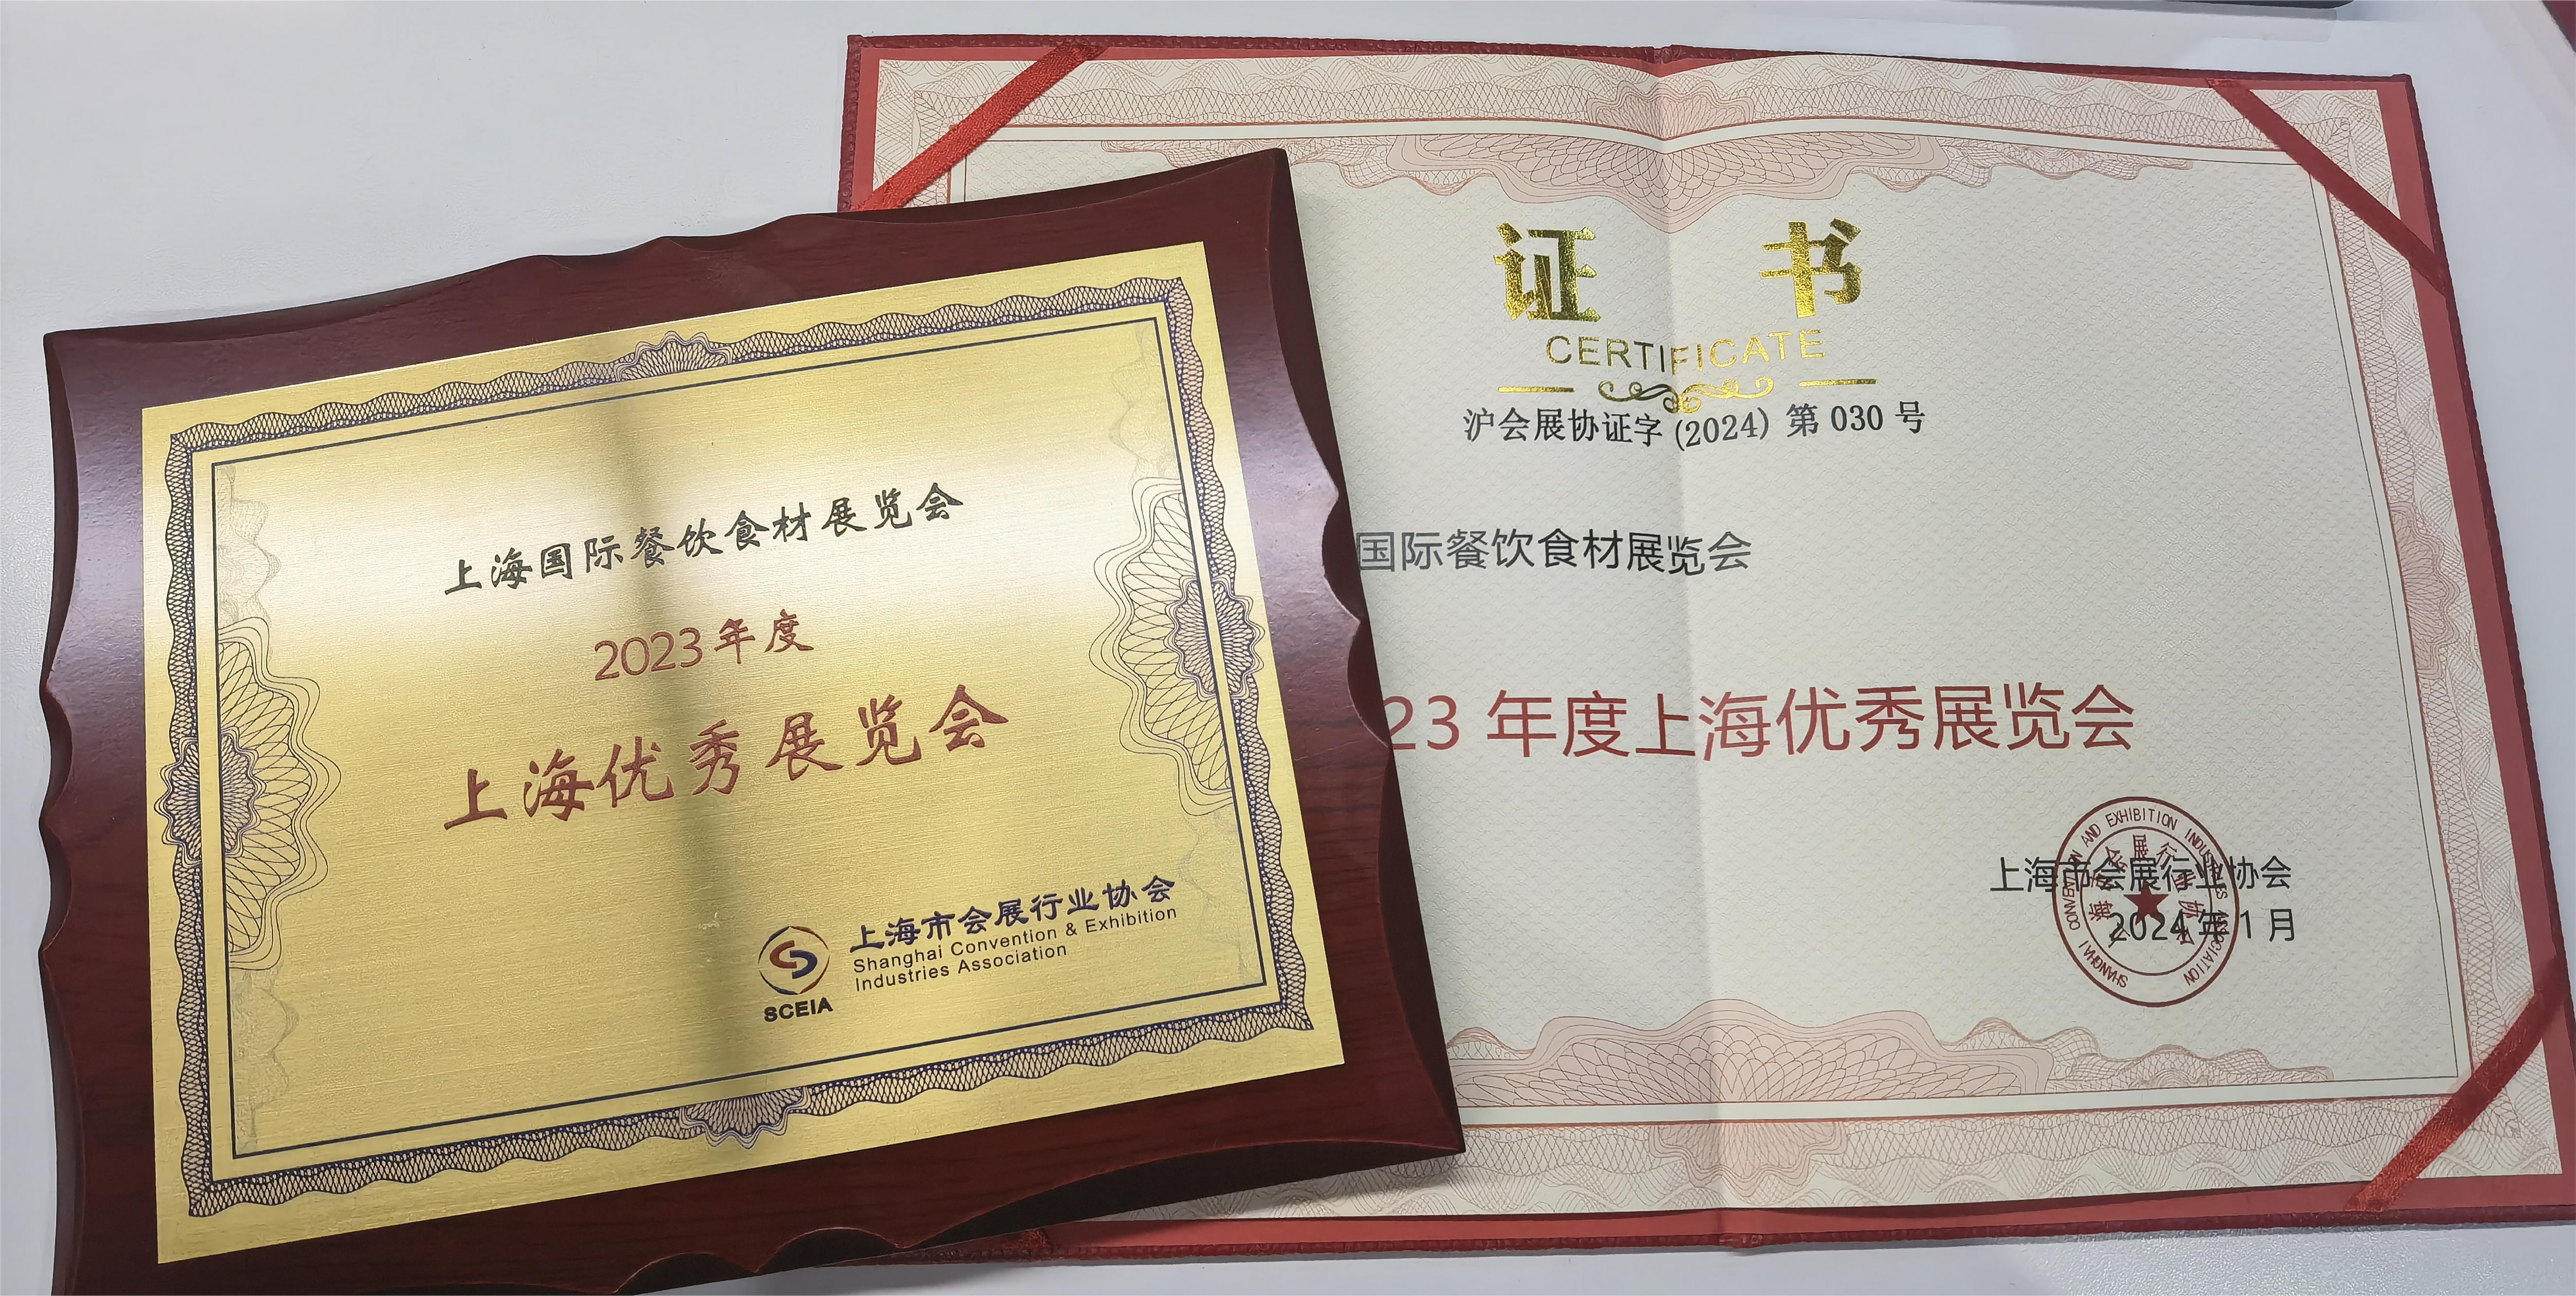 热烈祝贺2023上海国际餐饮食材展览会被上海市会展行业协会授予“2023年度上海优秀展览会”称号！